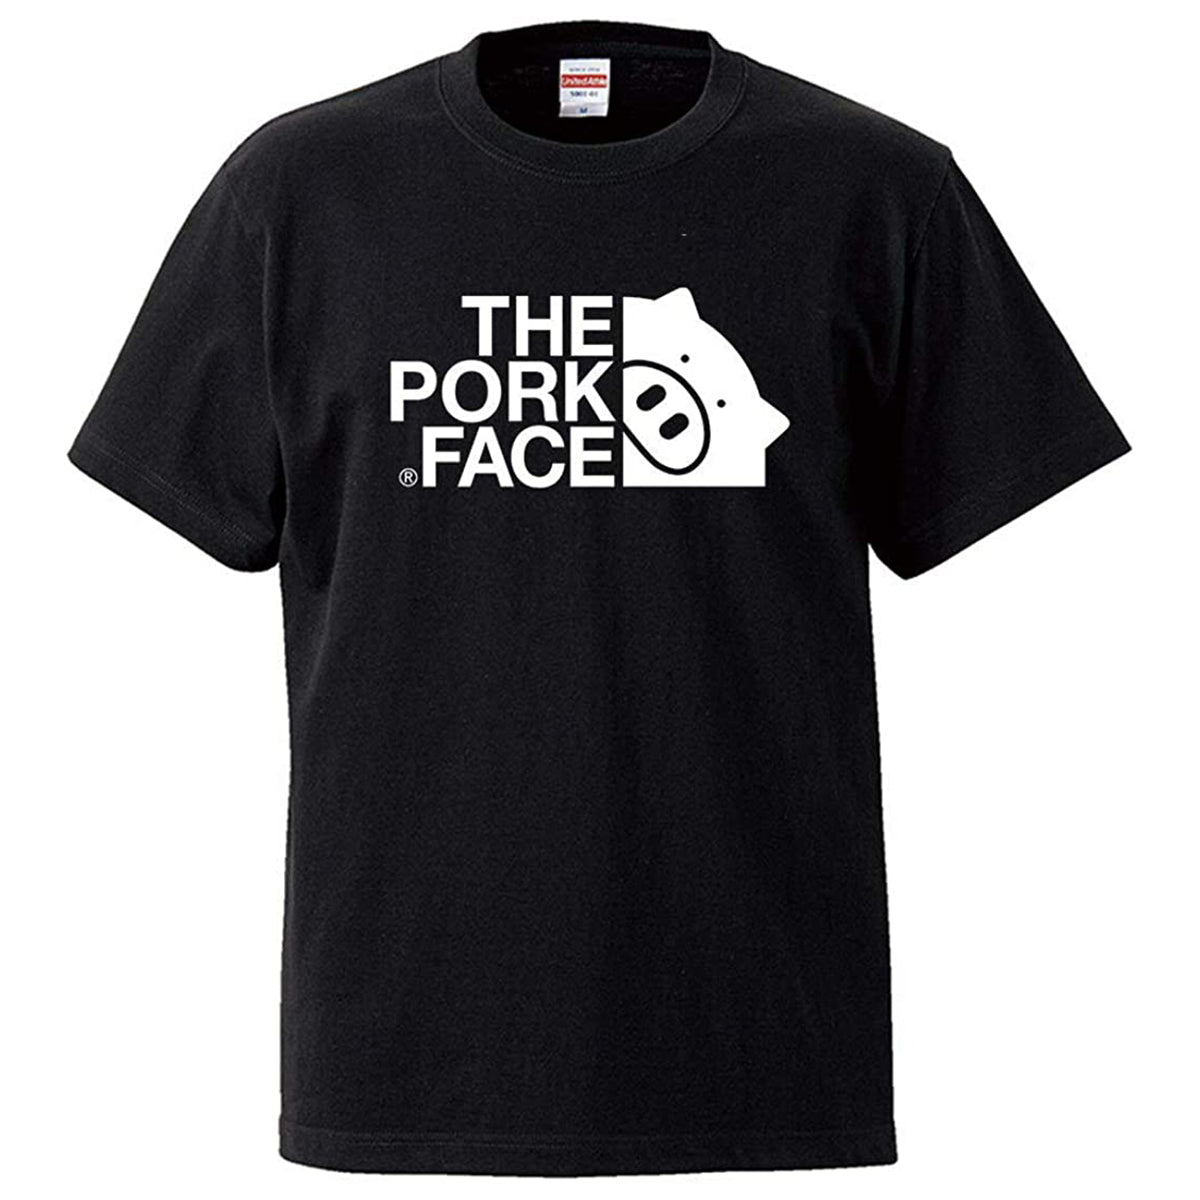 THE PORK FACE Tシャツ ユニセックス ブラック